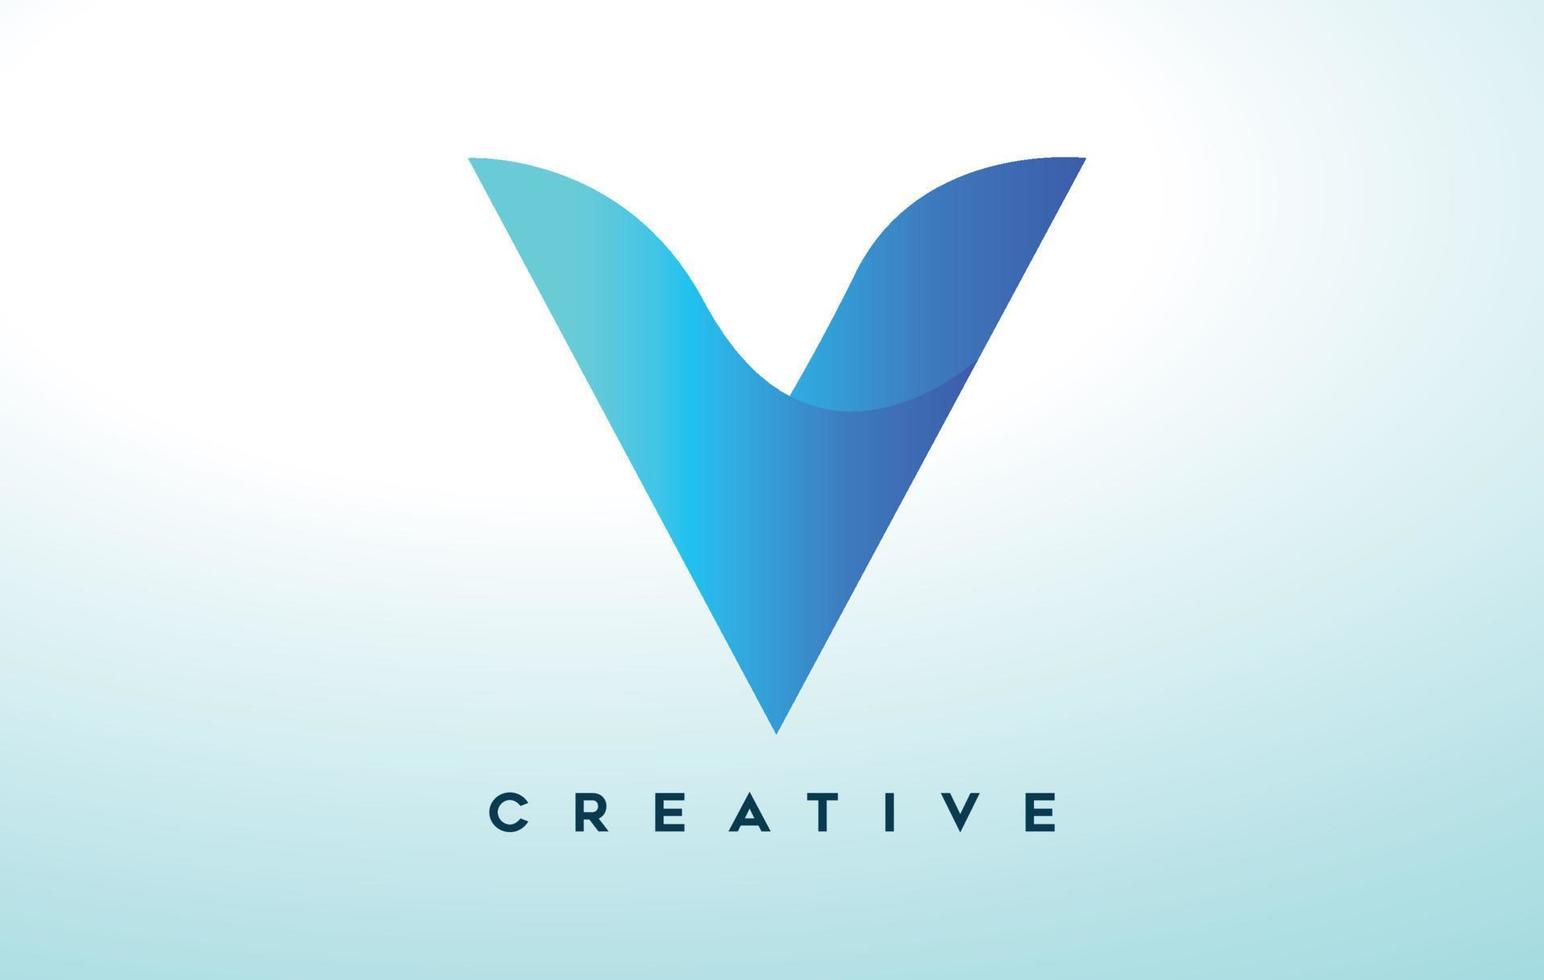 blå v bokstavslogotypdesign med stiliserat utseende och modern design för företagslogotyp vektor